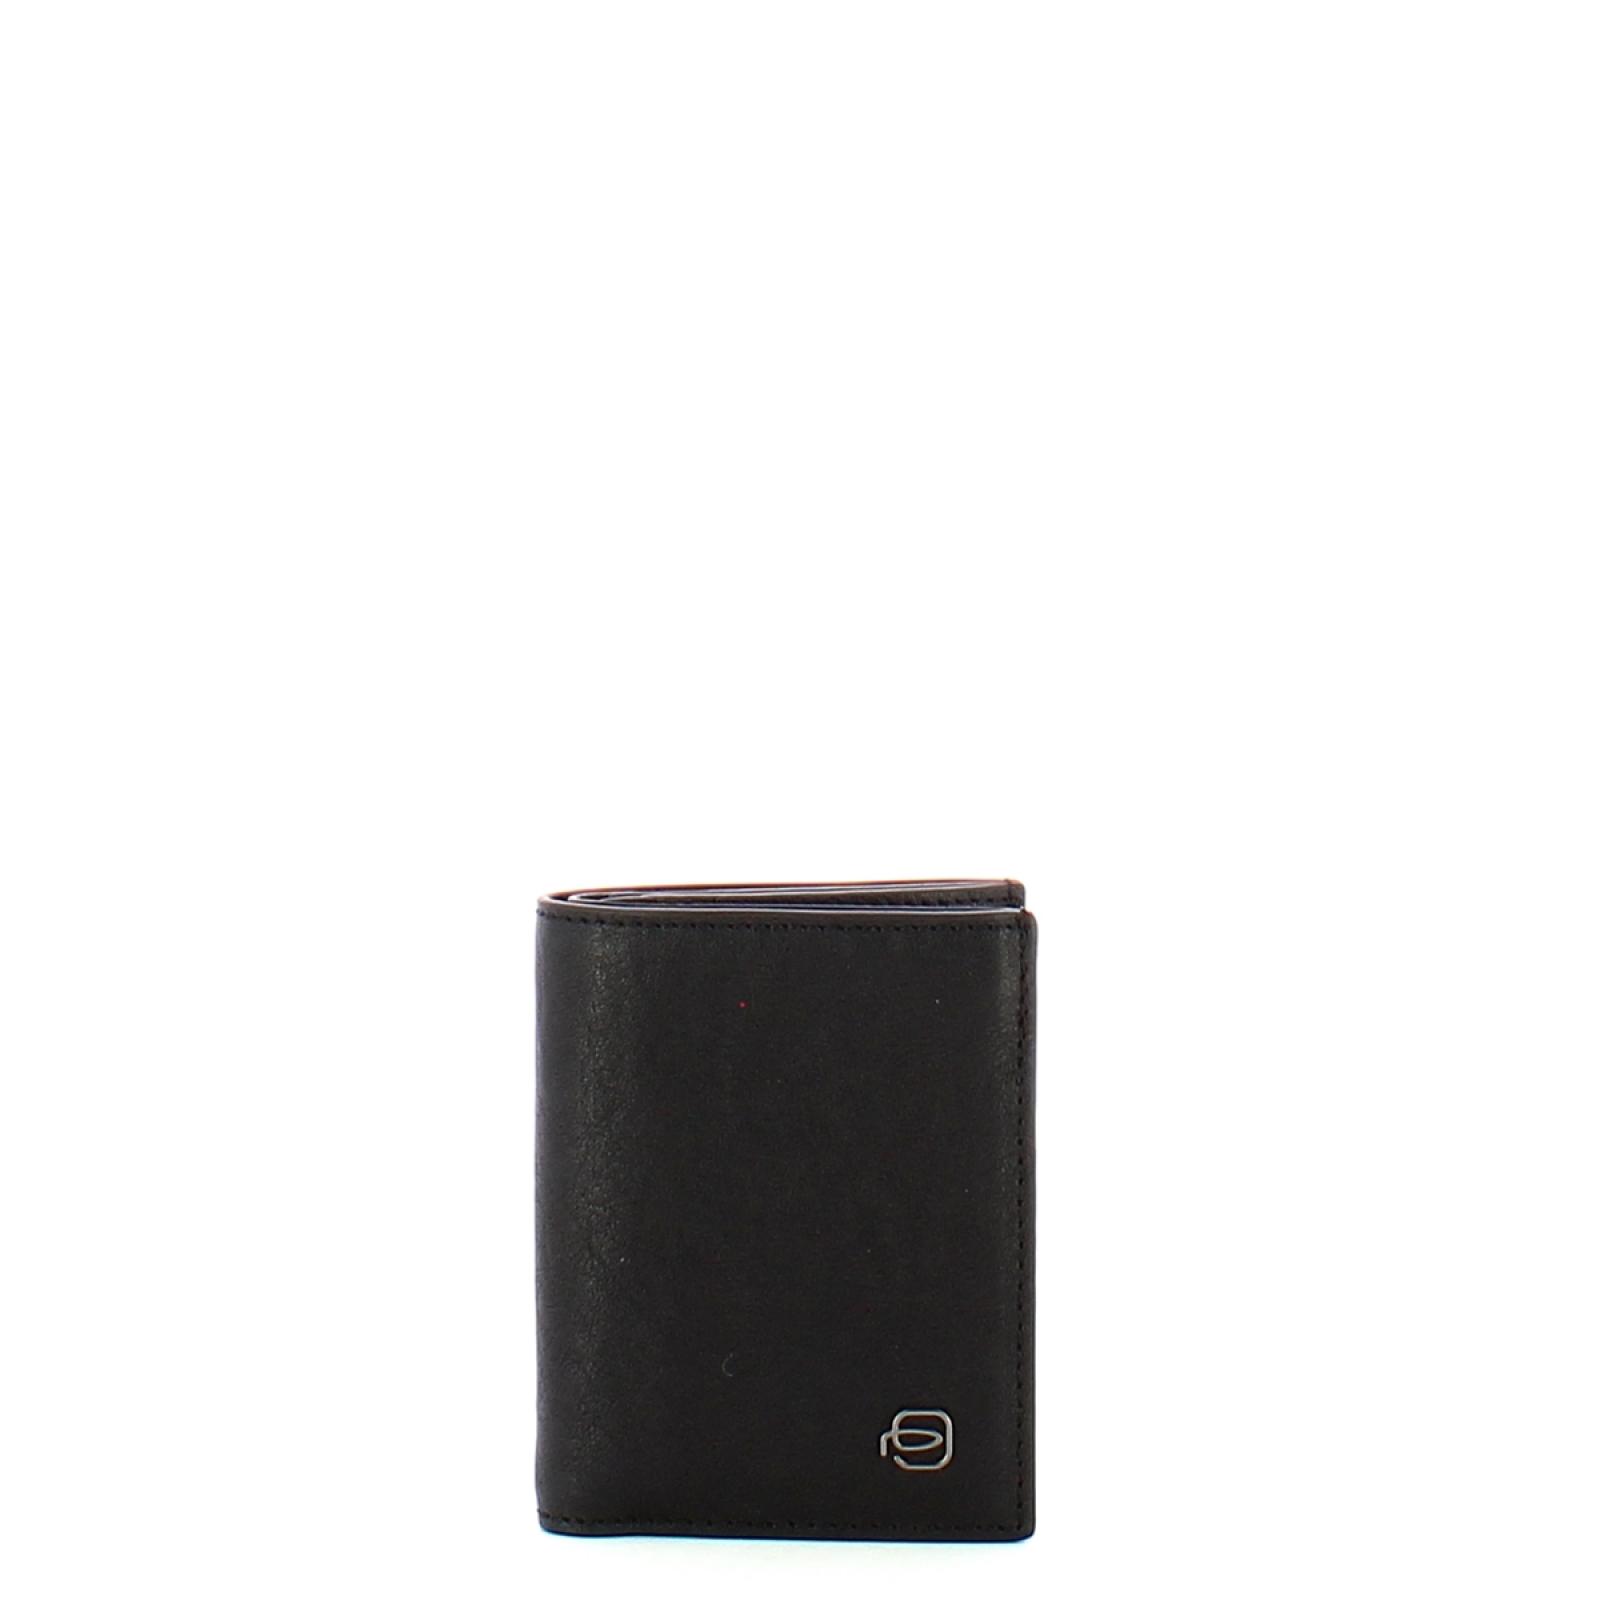 Piquadro Portafoglio Verticale Black Square RFID - 1